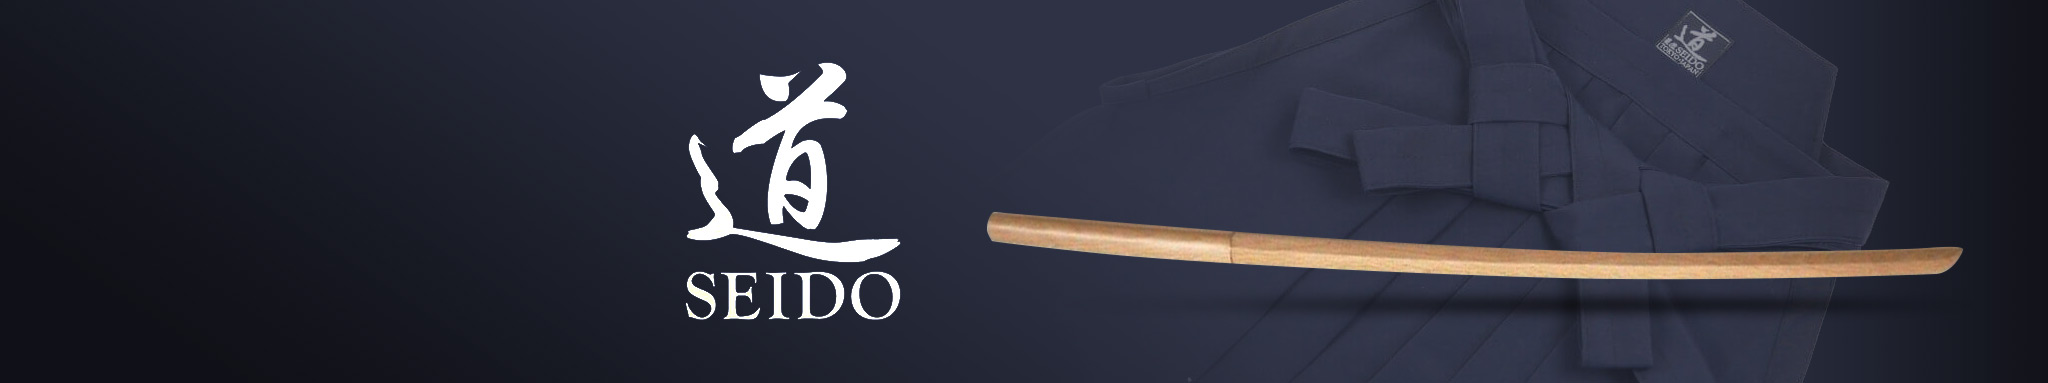 Seido : équipements & accessoires de la marque Seido | Dragon Bleu